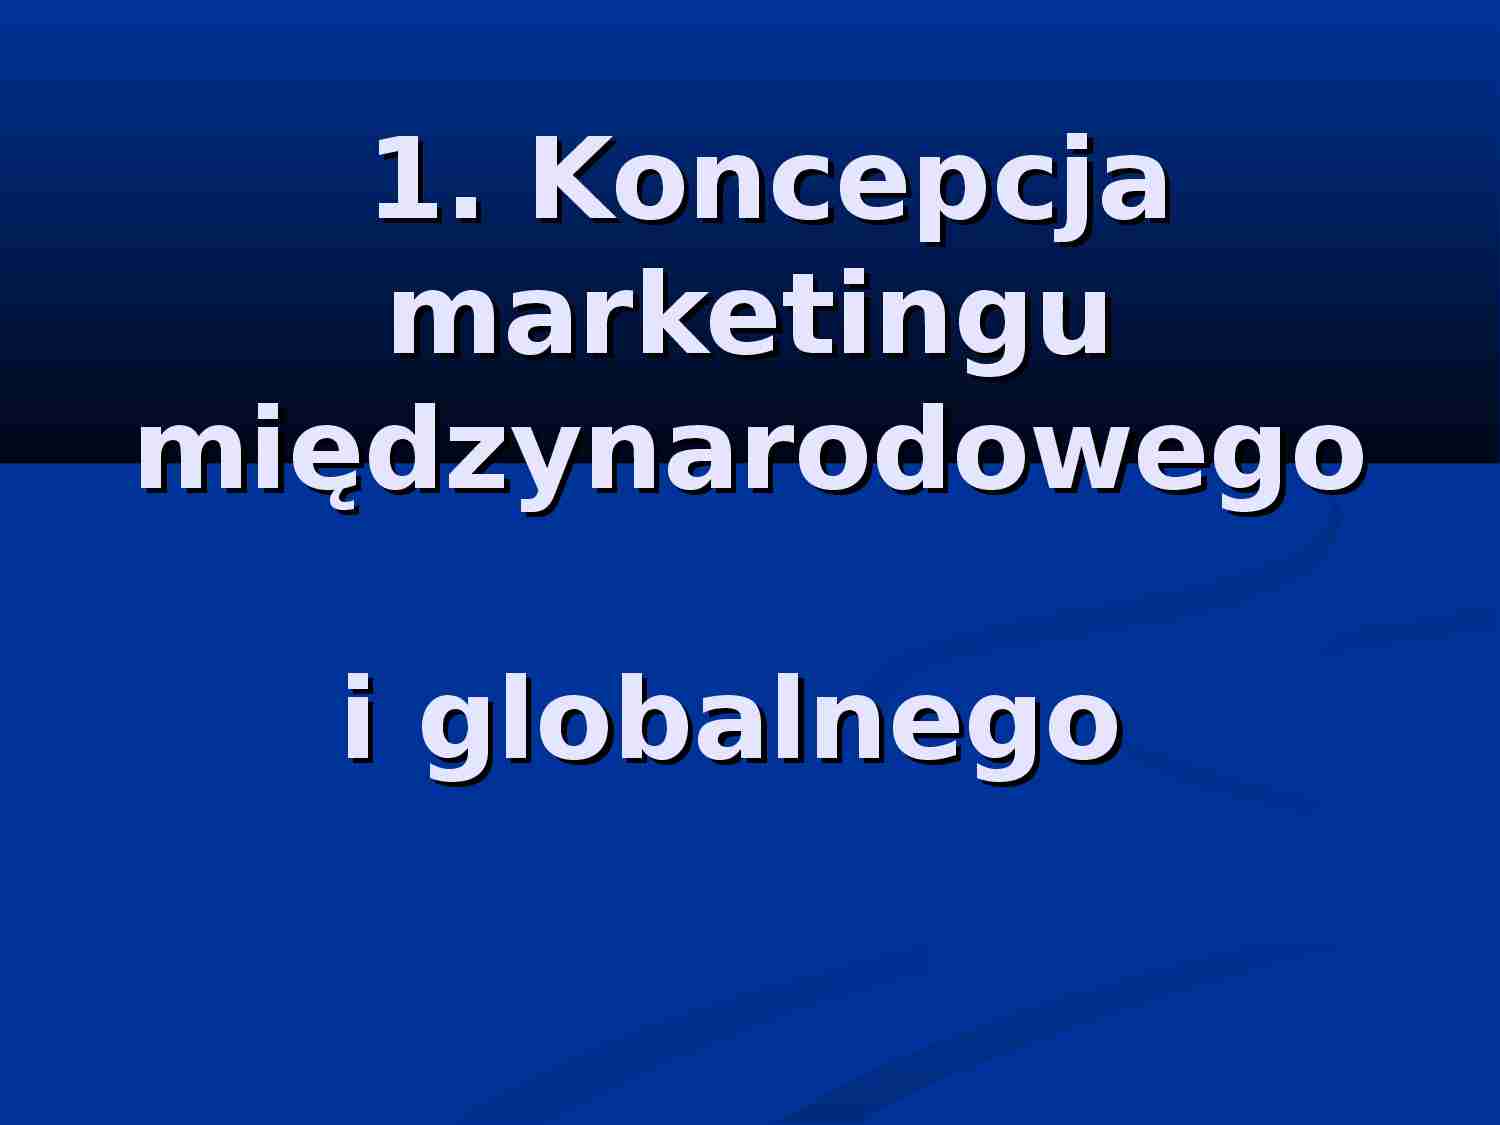 Koncepcja marketingu międzynarodowego i globalnego - prezentacja - strona 1